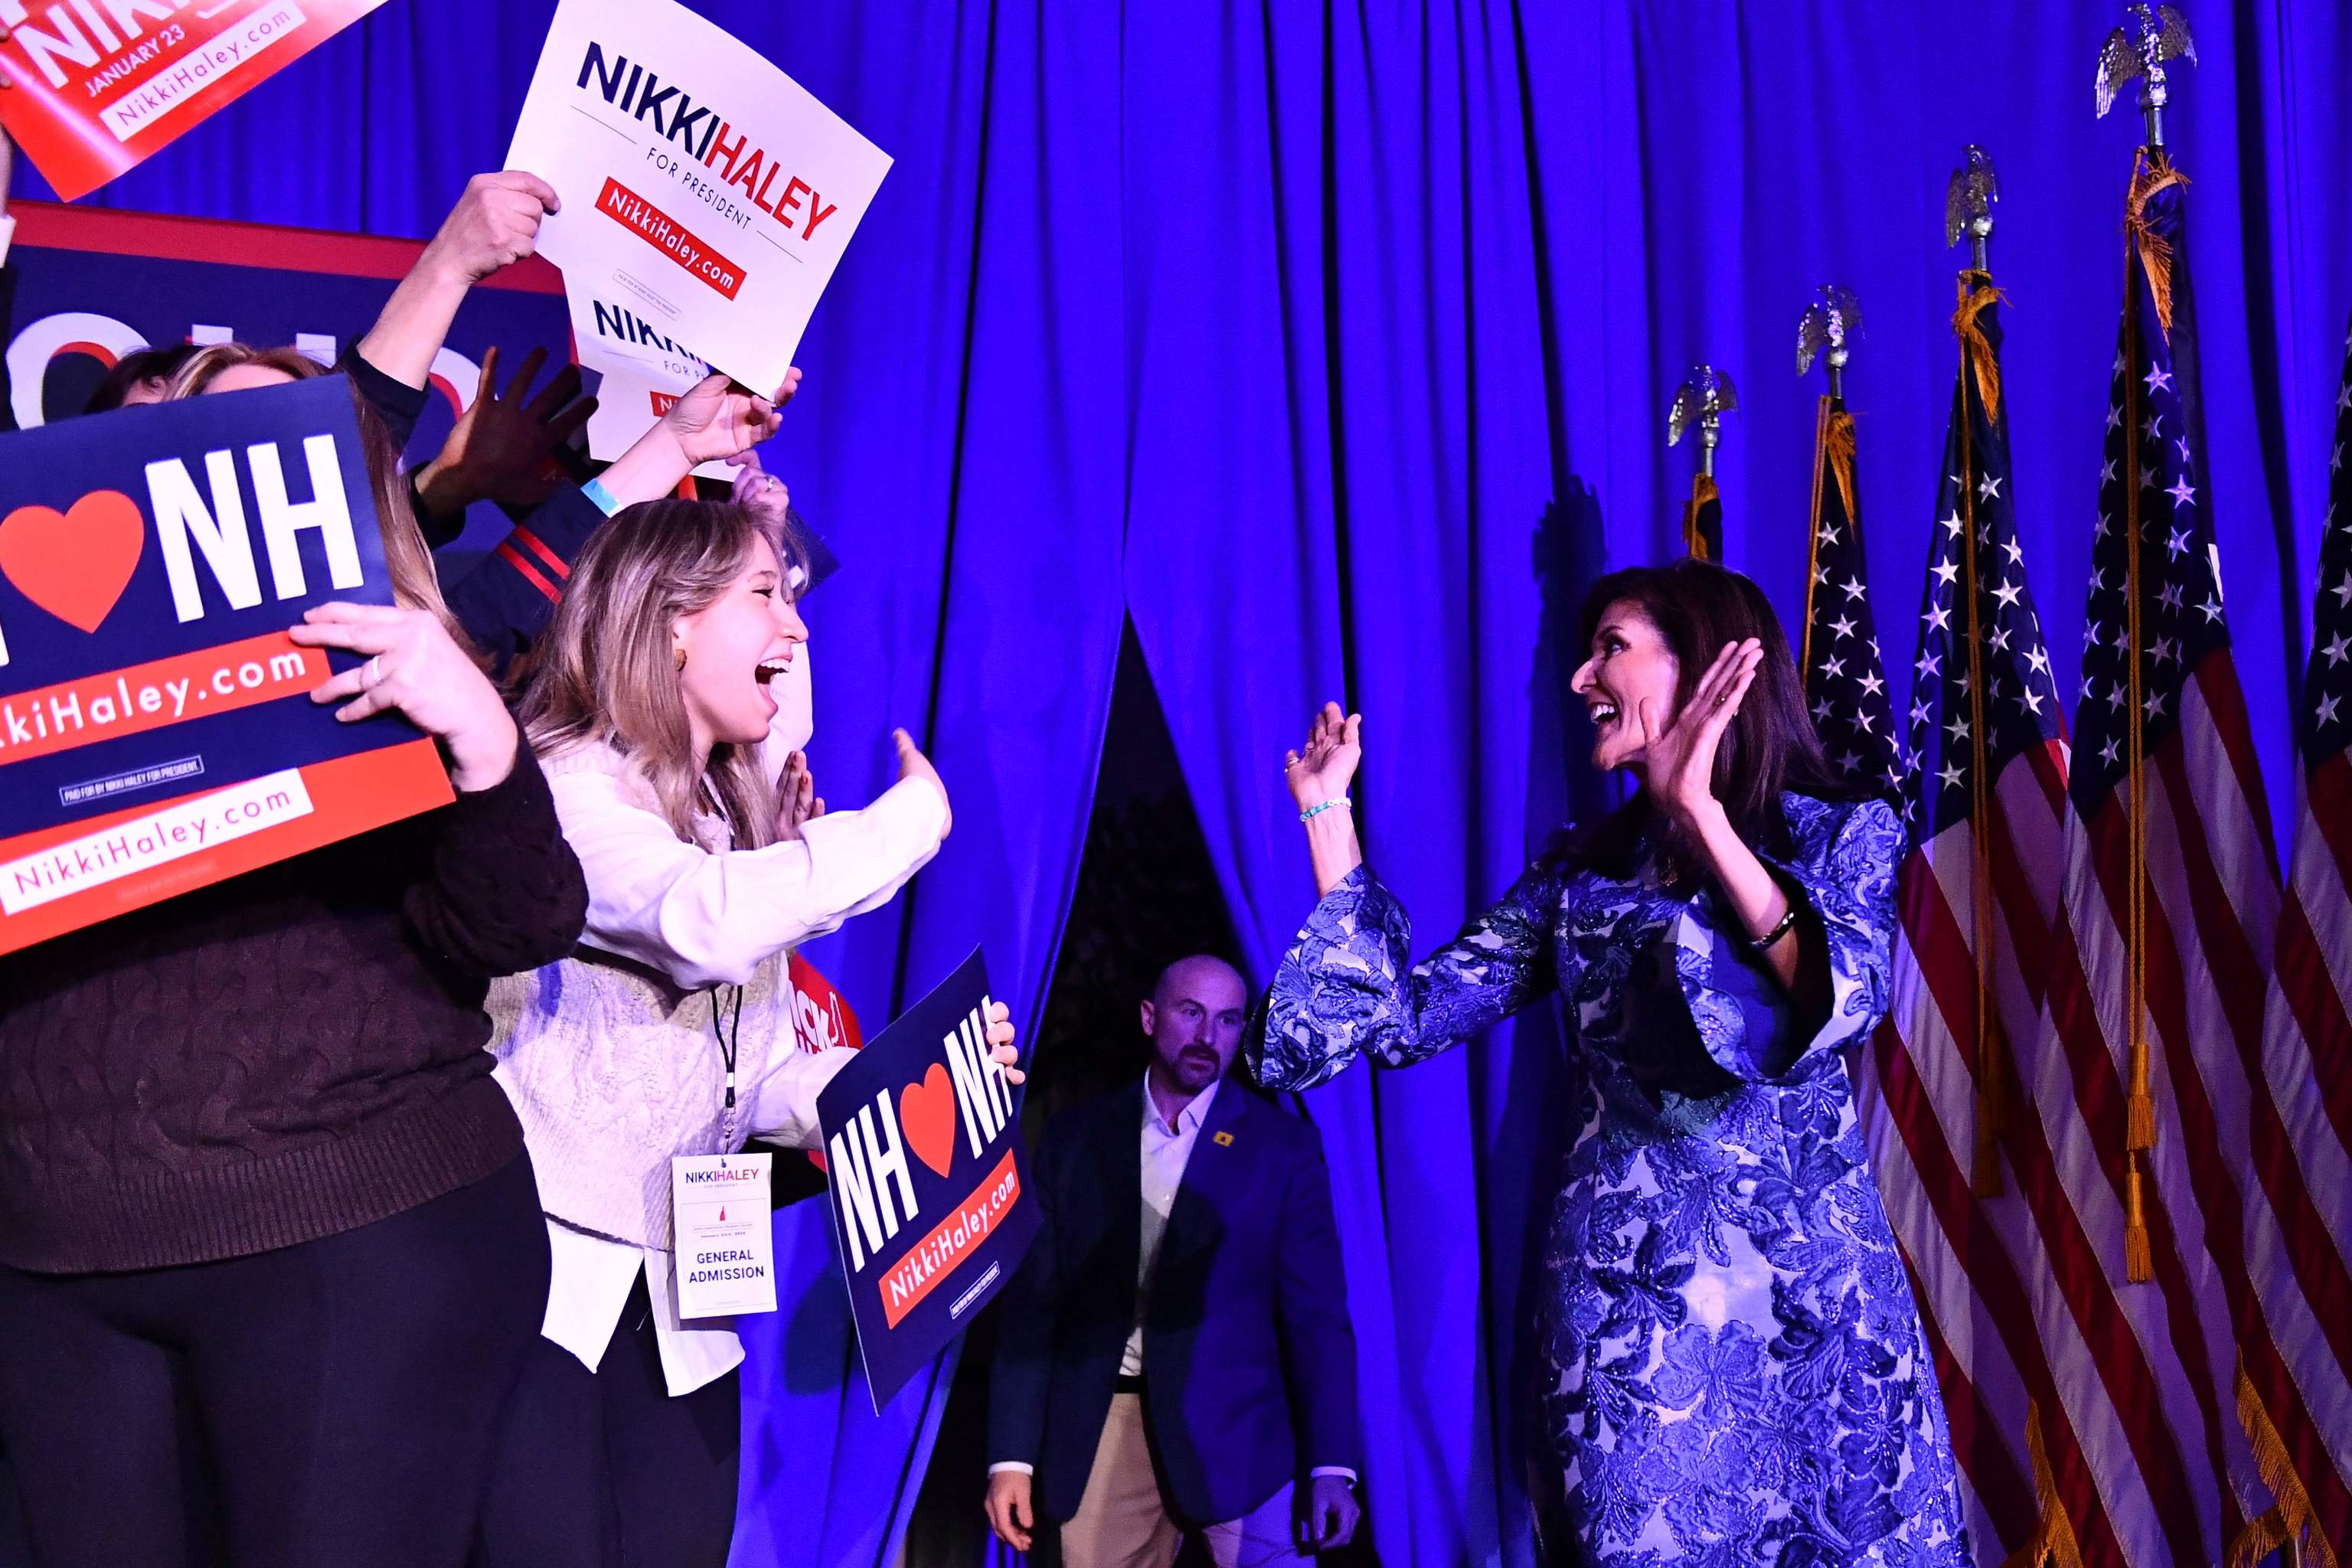 Nikki Haley, aspirante a candidata del partido Republicano, saluda en un mitin en New Hampshire.